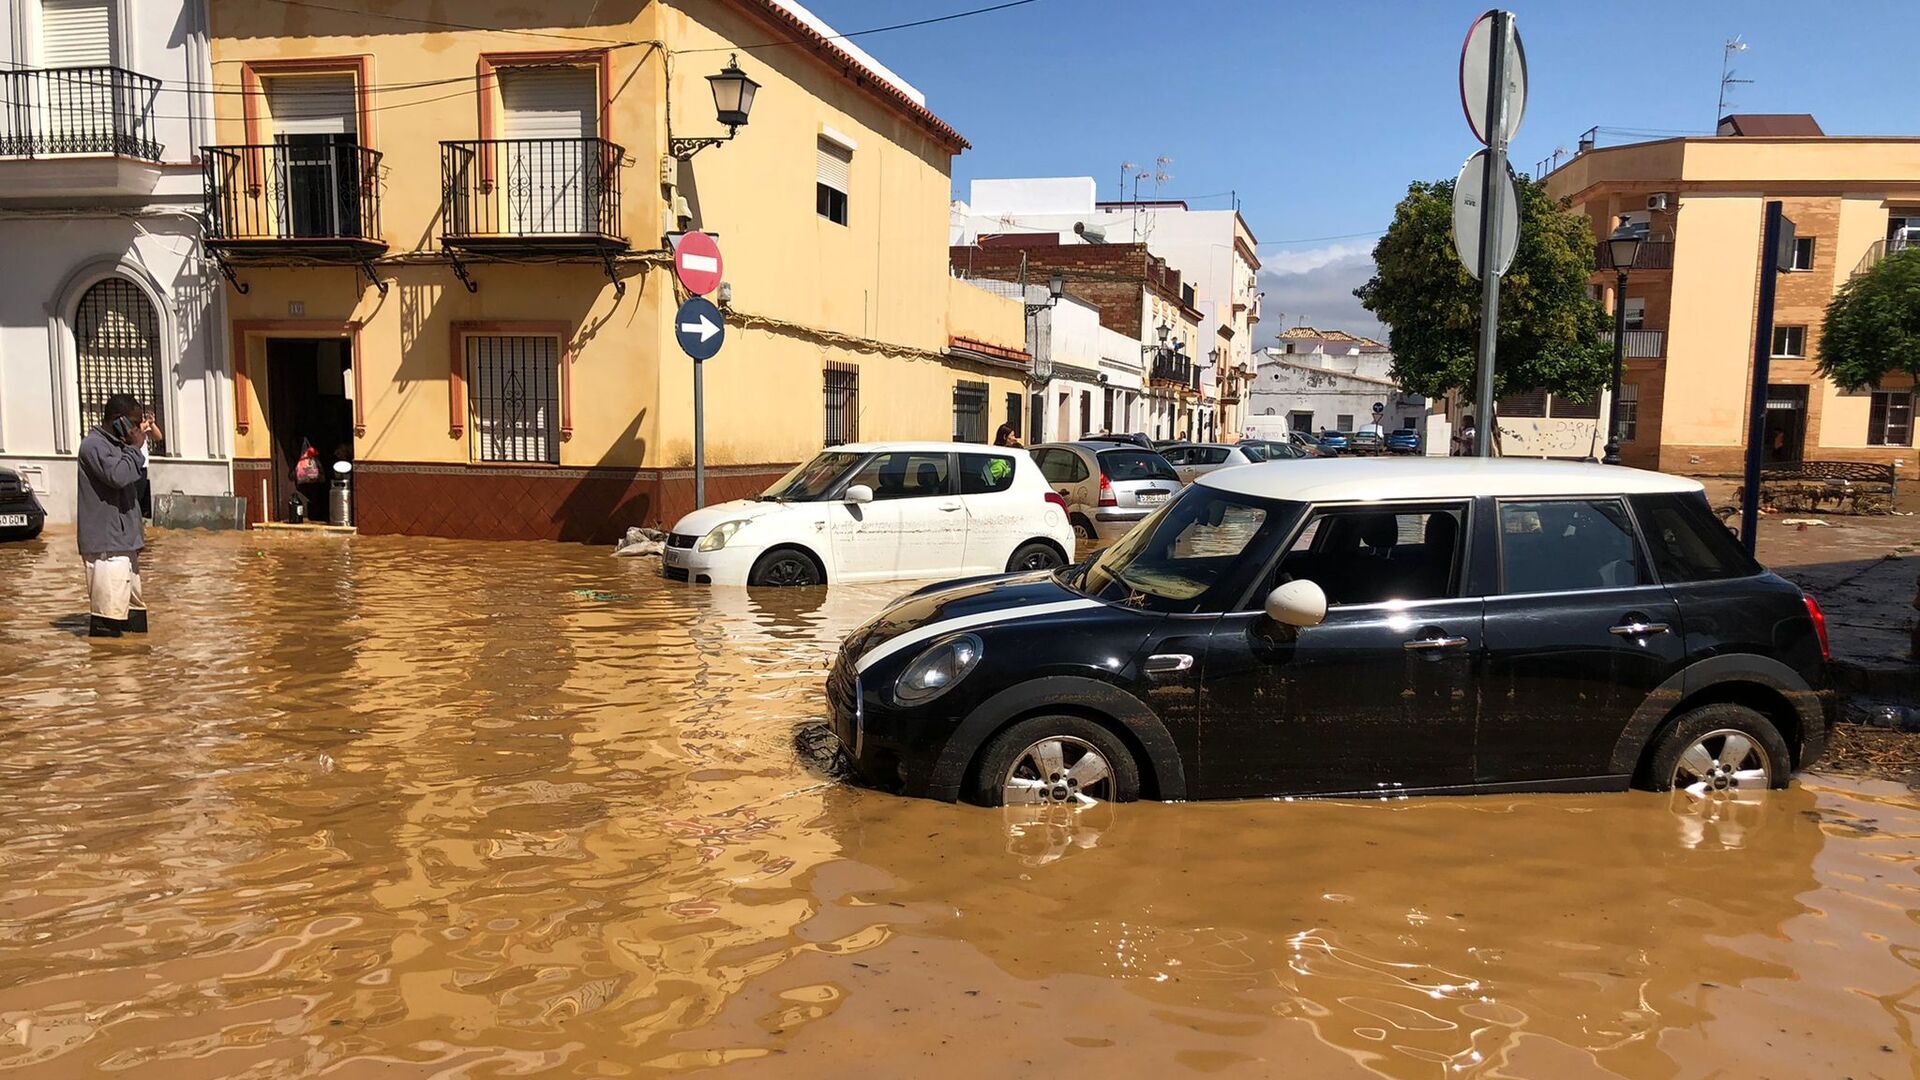 Im&aacute;genes de las calles de Lepe tras las inundaciones